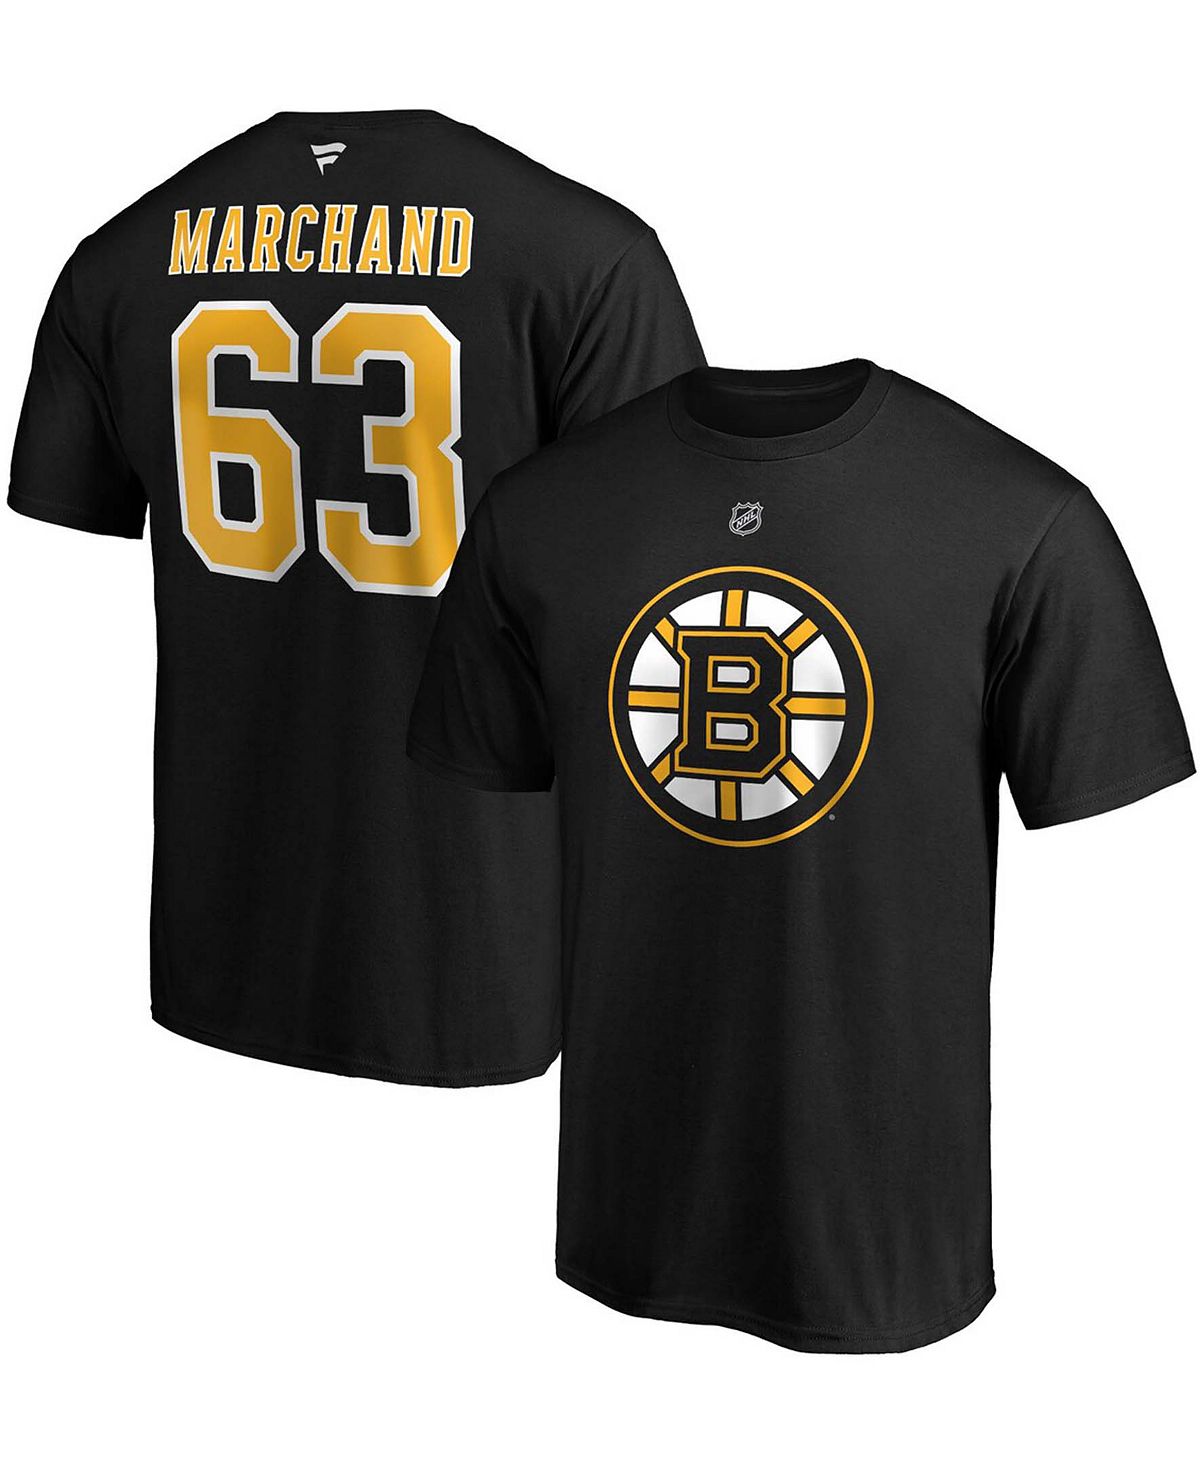 Фирменная мужская футболка brad marchand boston bruins team с аутентичным названием и номером стека Fanatics, черный